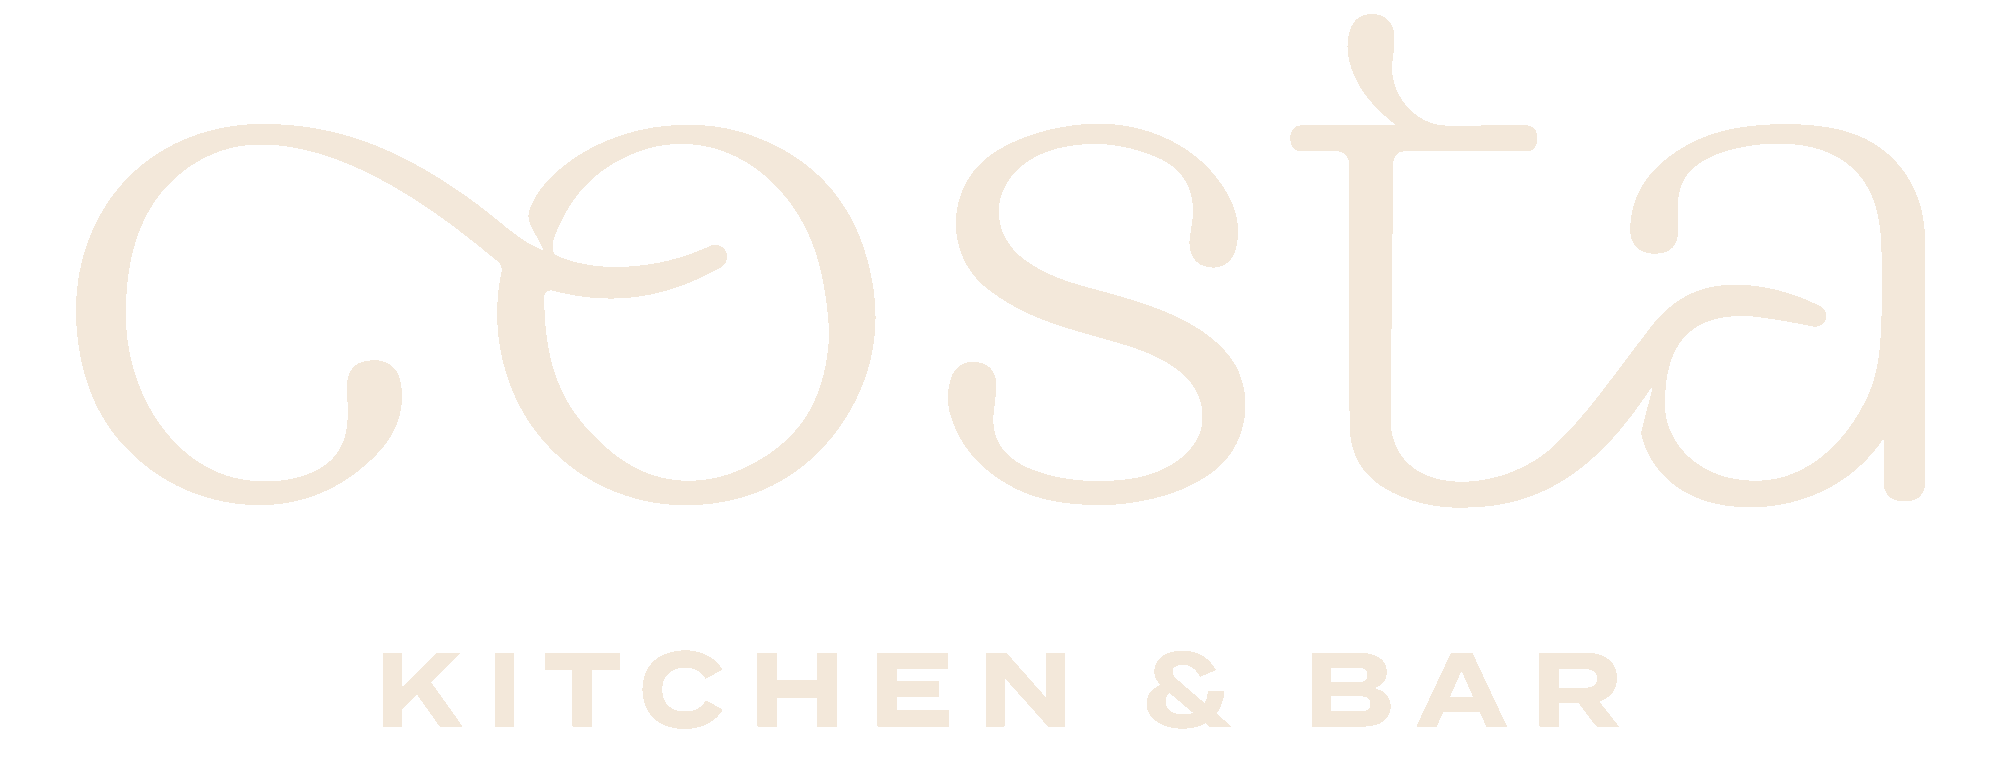 Costa Kitchen & Bar Logo